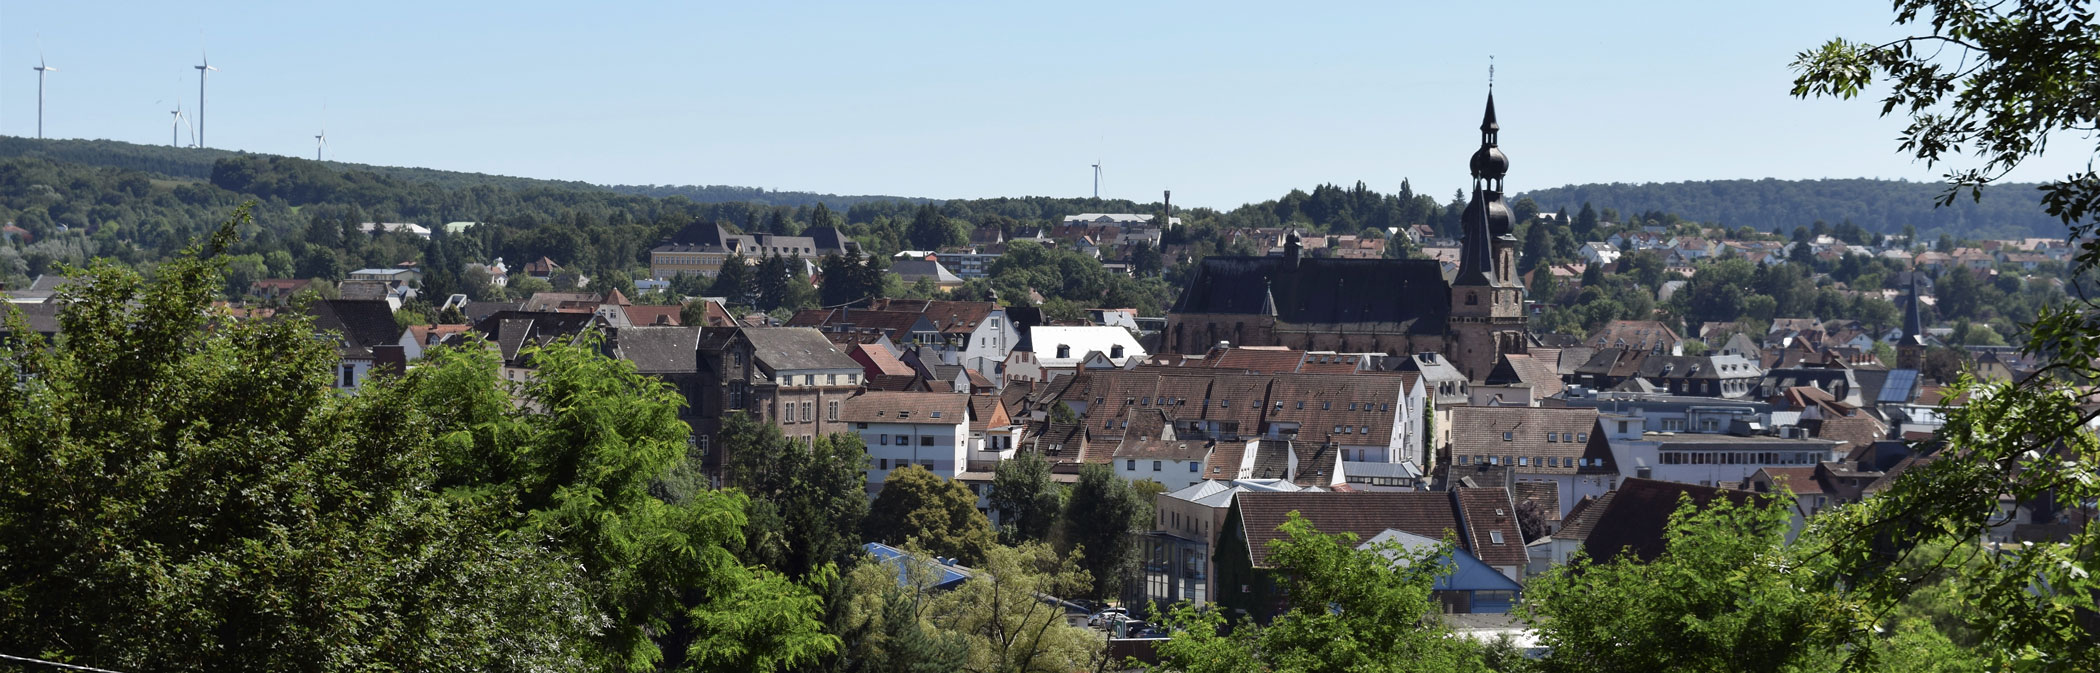 Das Panoramabild zeigt die Stadt von oben